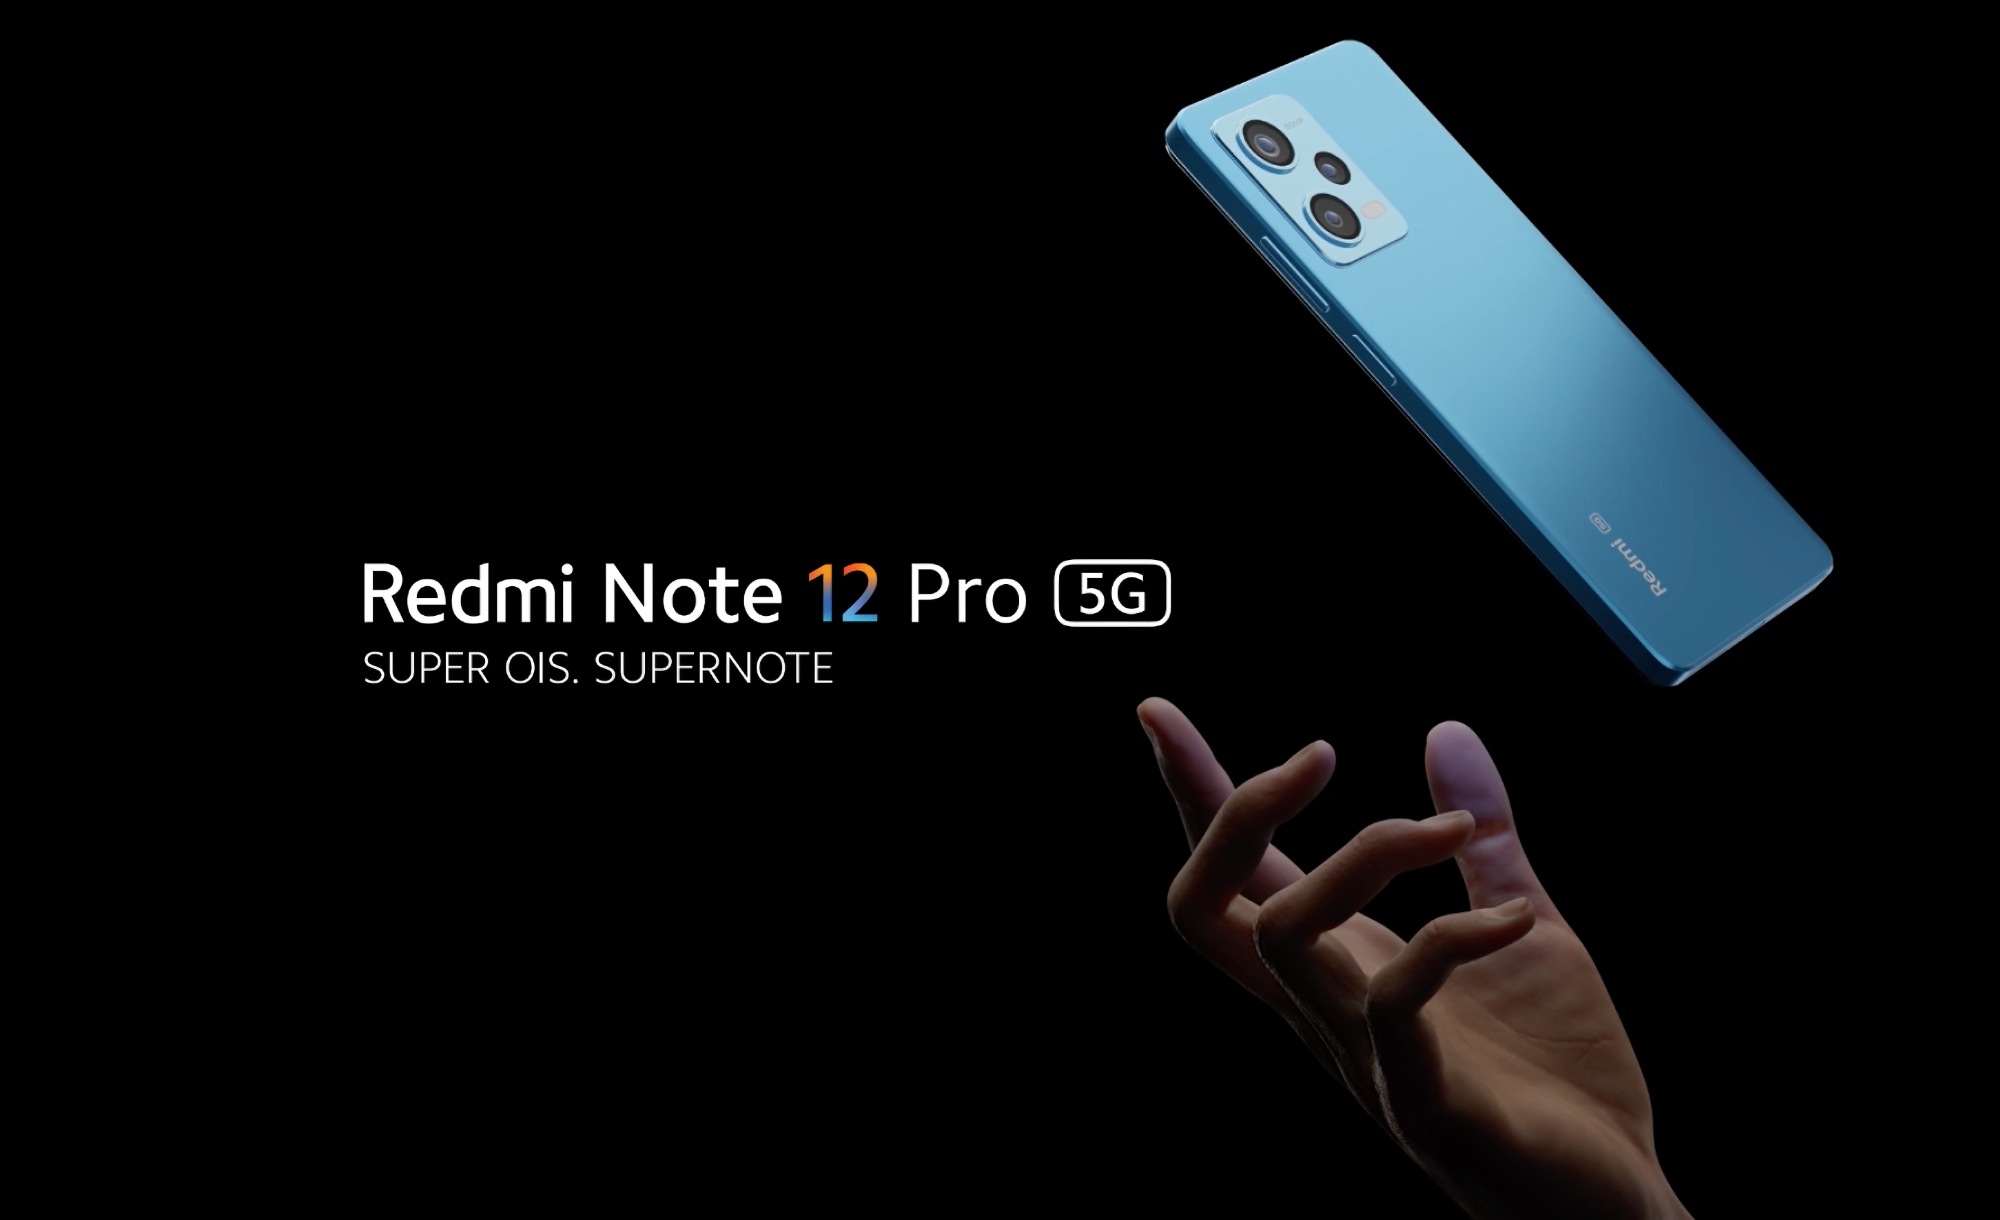 Redmi Note 12 Pro з чипом MediaTek Dimensity 1080, камерою Sony IMX766 на 50 МП і швидкою зарядкою на 67 Вт представили за межами Китаю